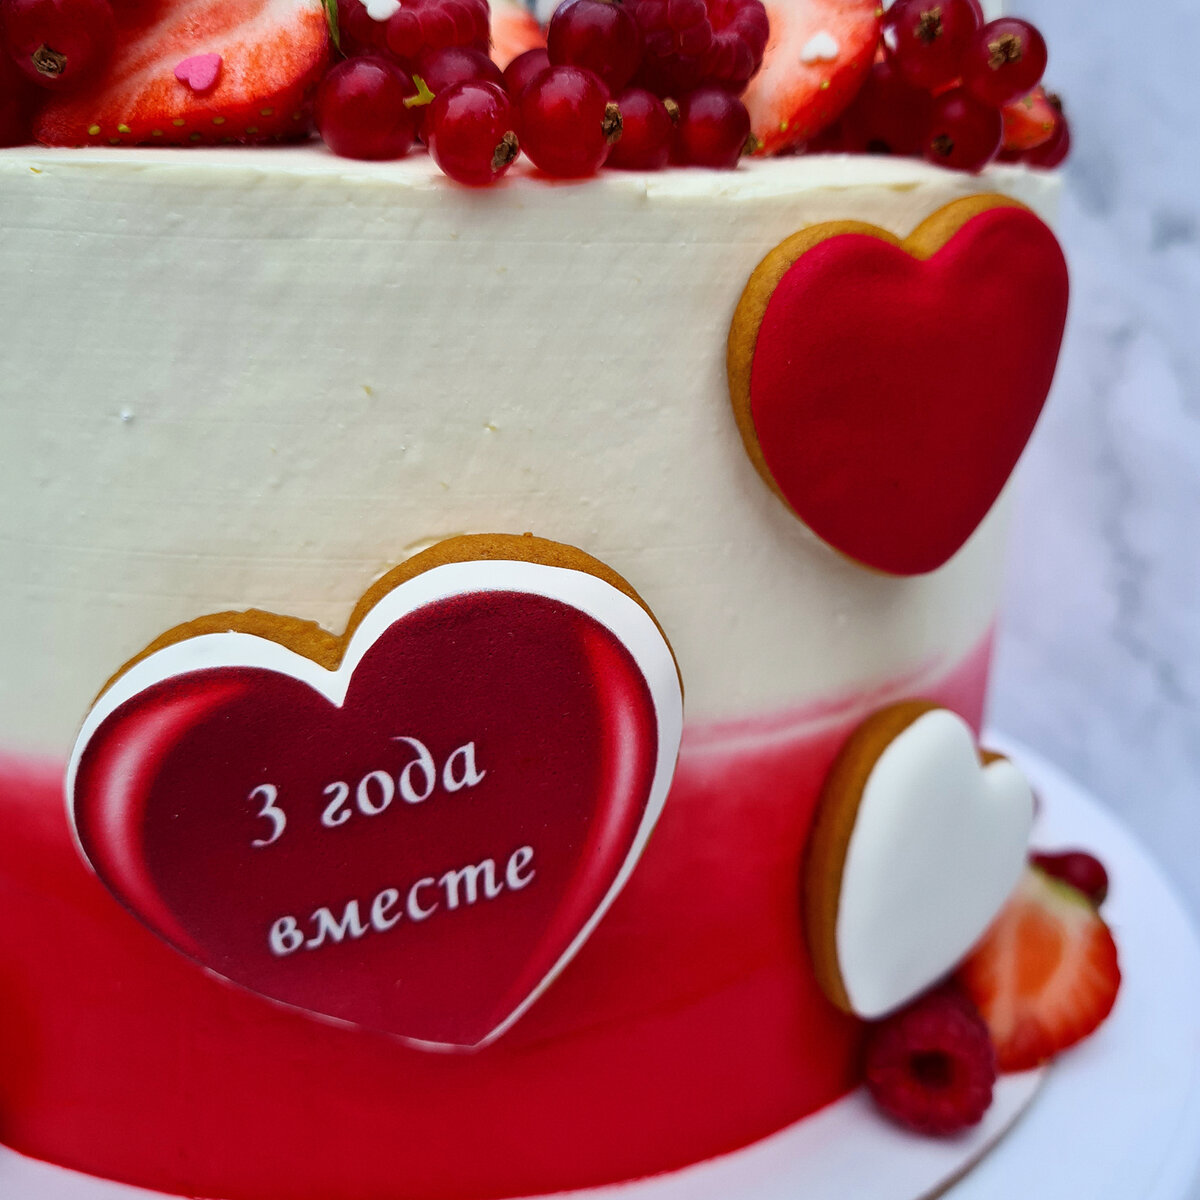 Оформление торта на годовщину свадьбы